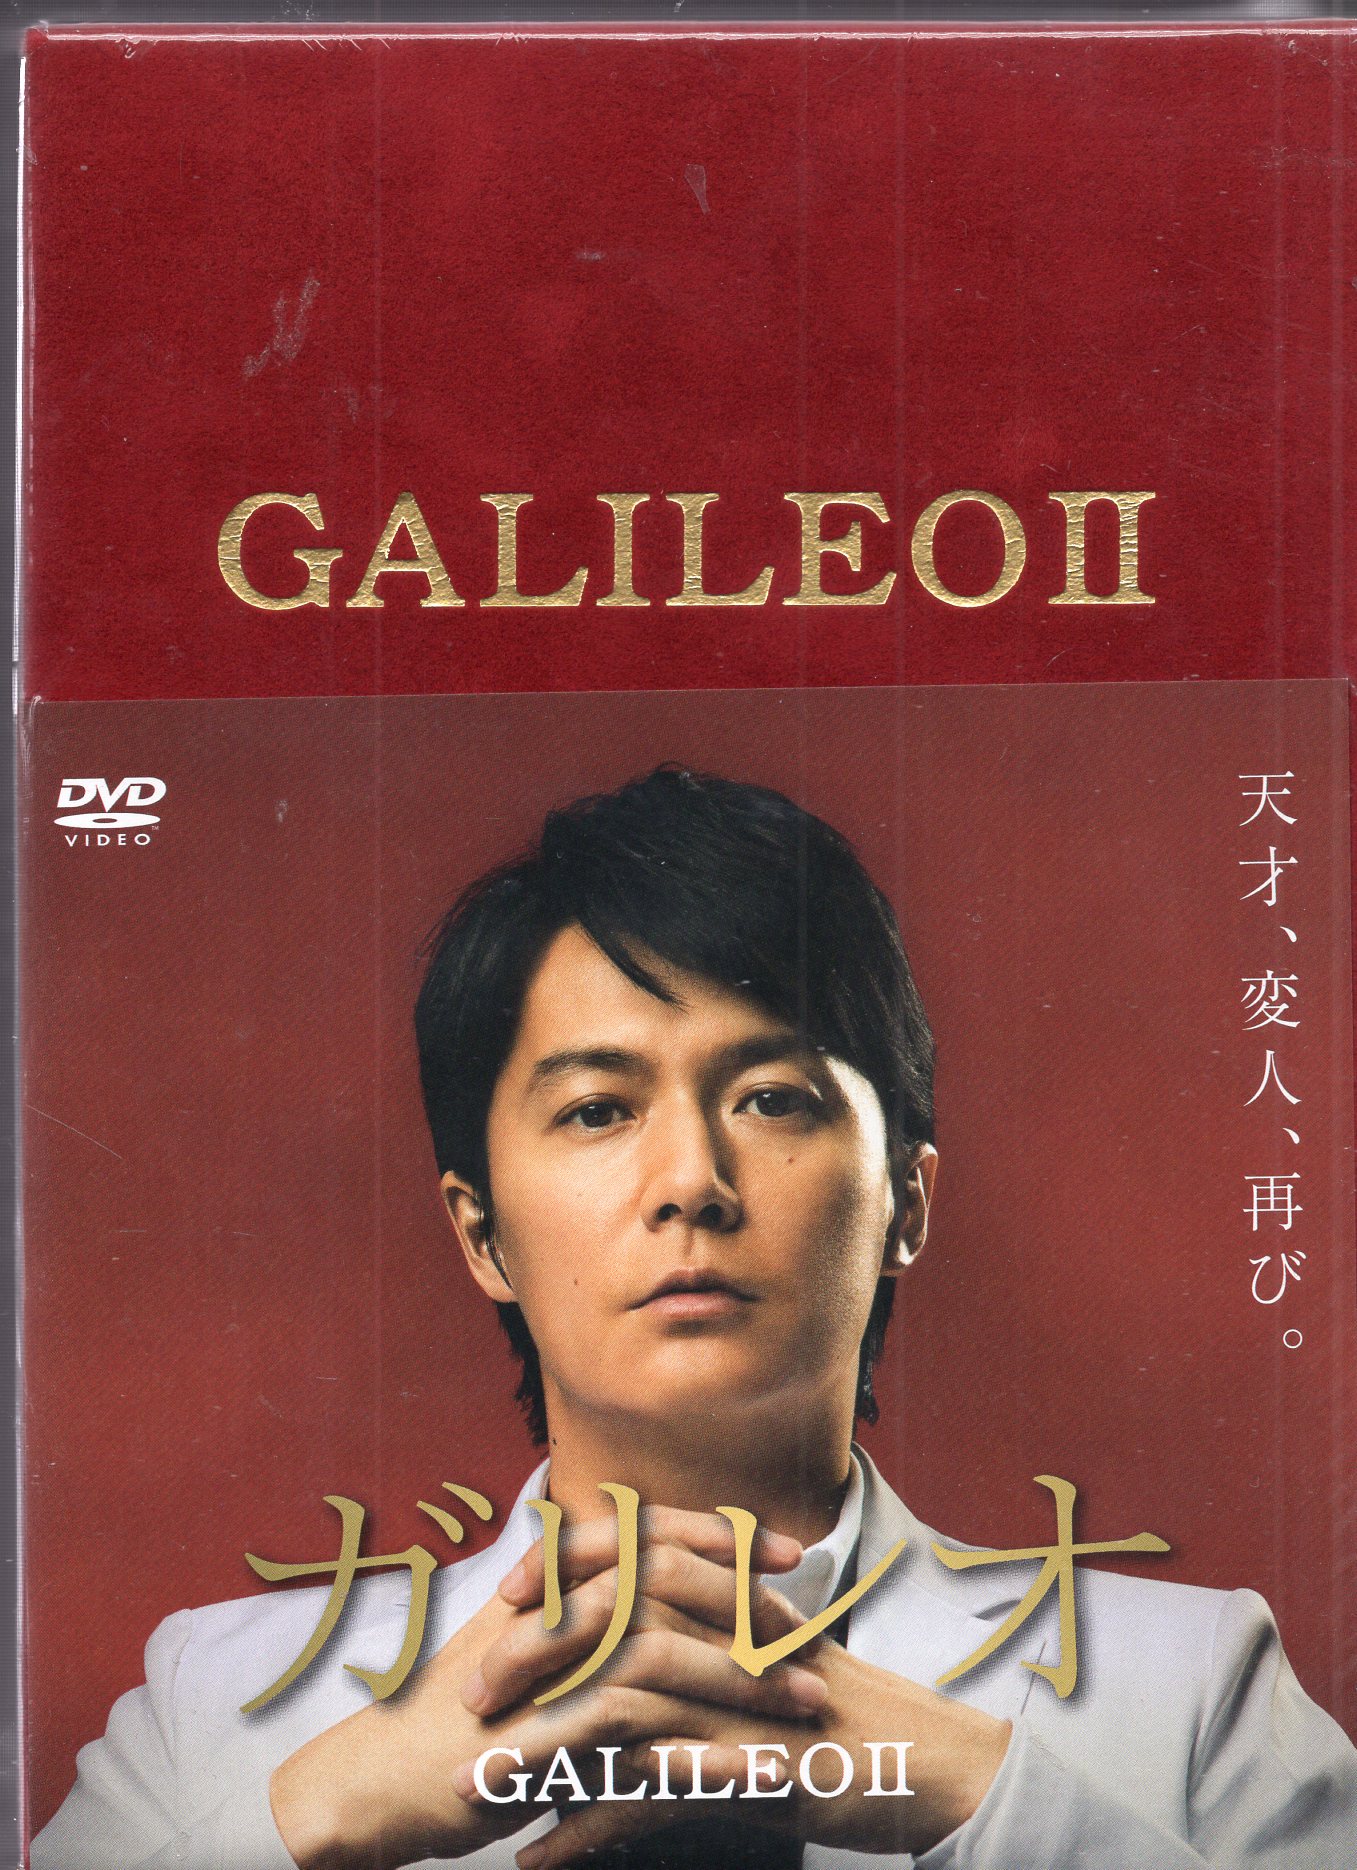 ガリレオφ エピソードゼロ DVD レンタル落ち - TVドラマ